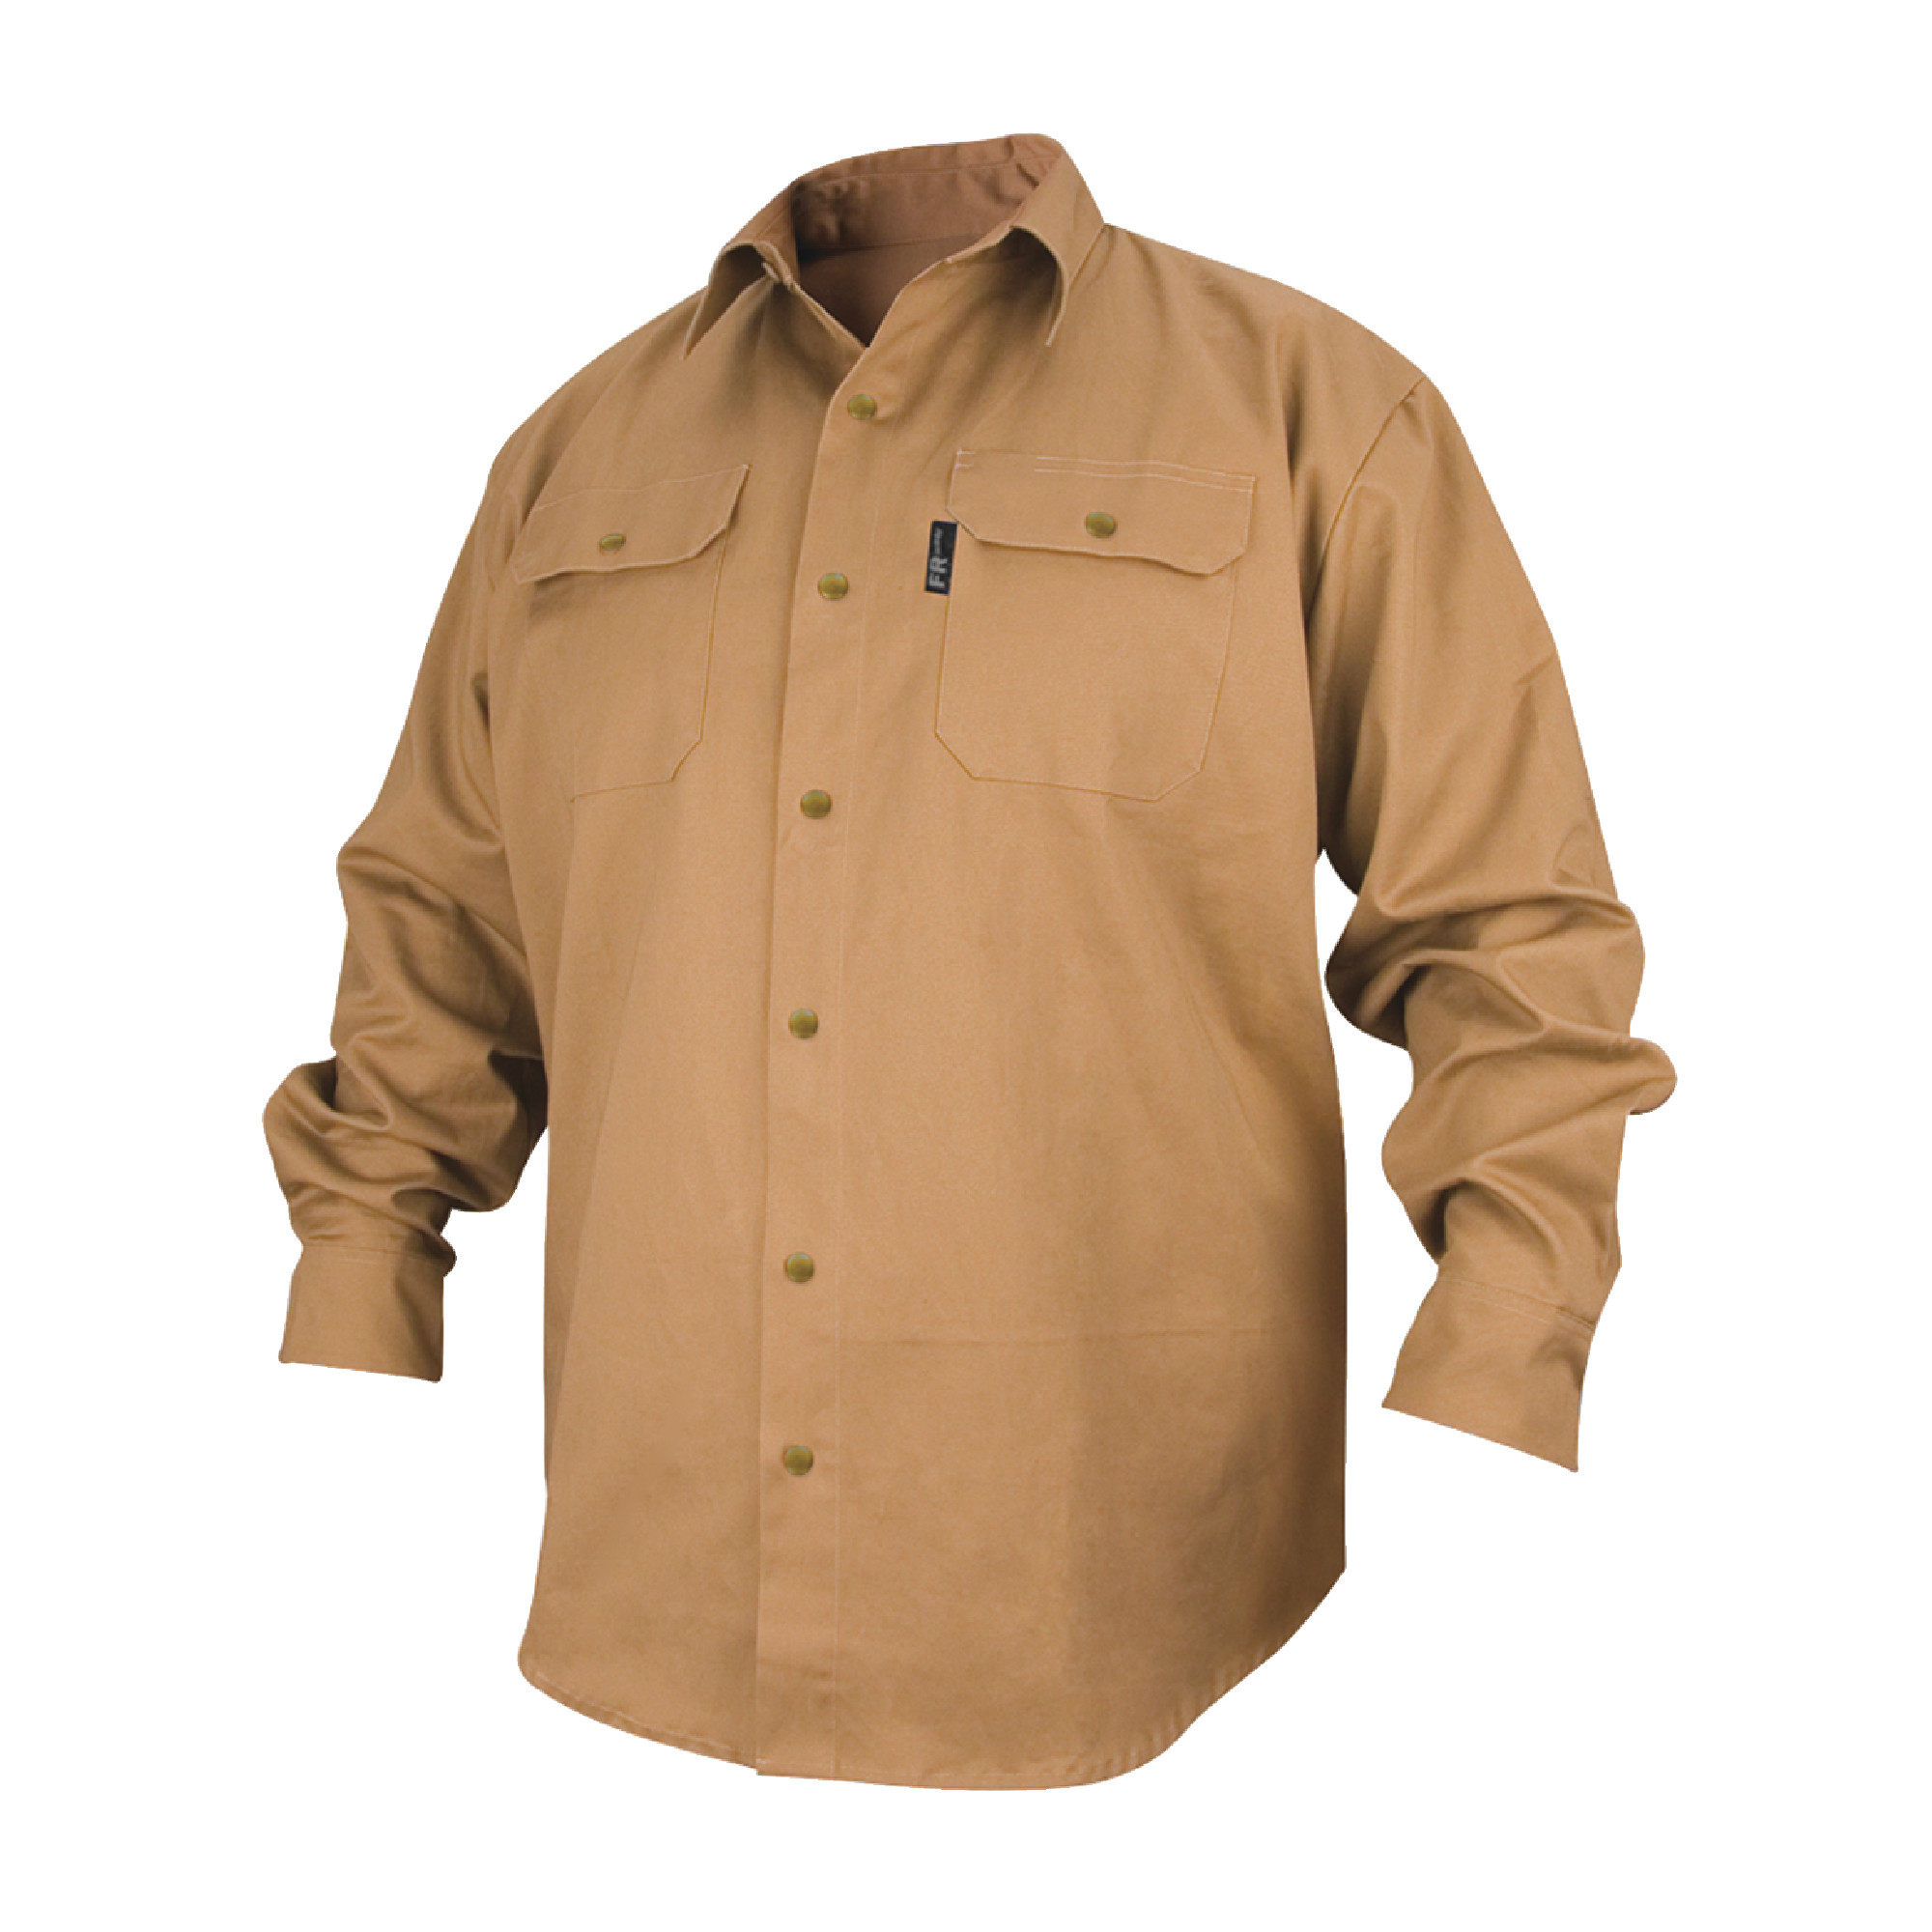 Black Stallion Khaki Fire Resistant Cotton Welding Shirt - Size L